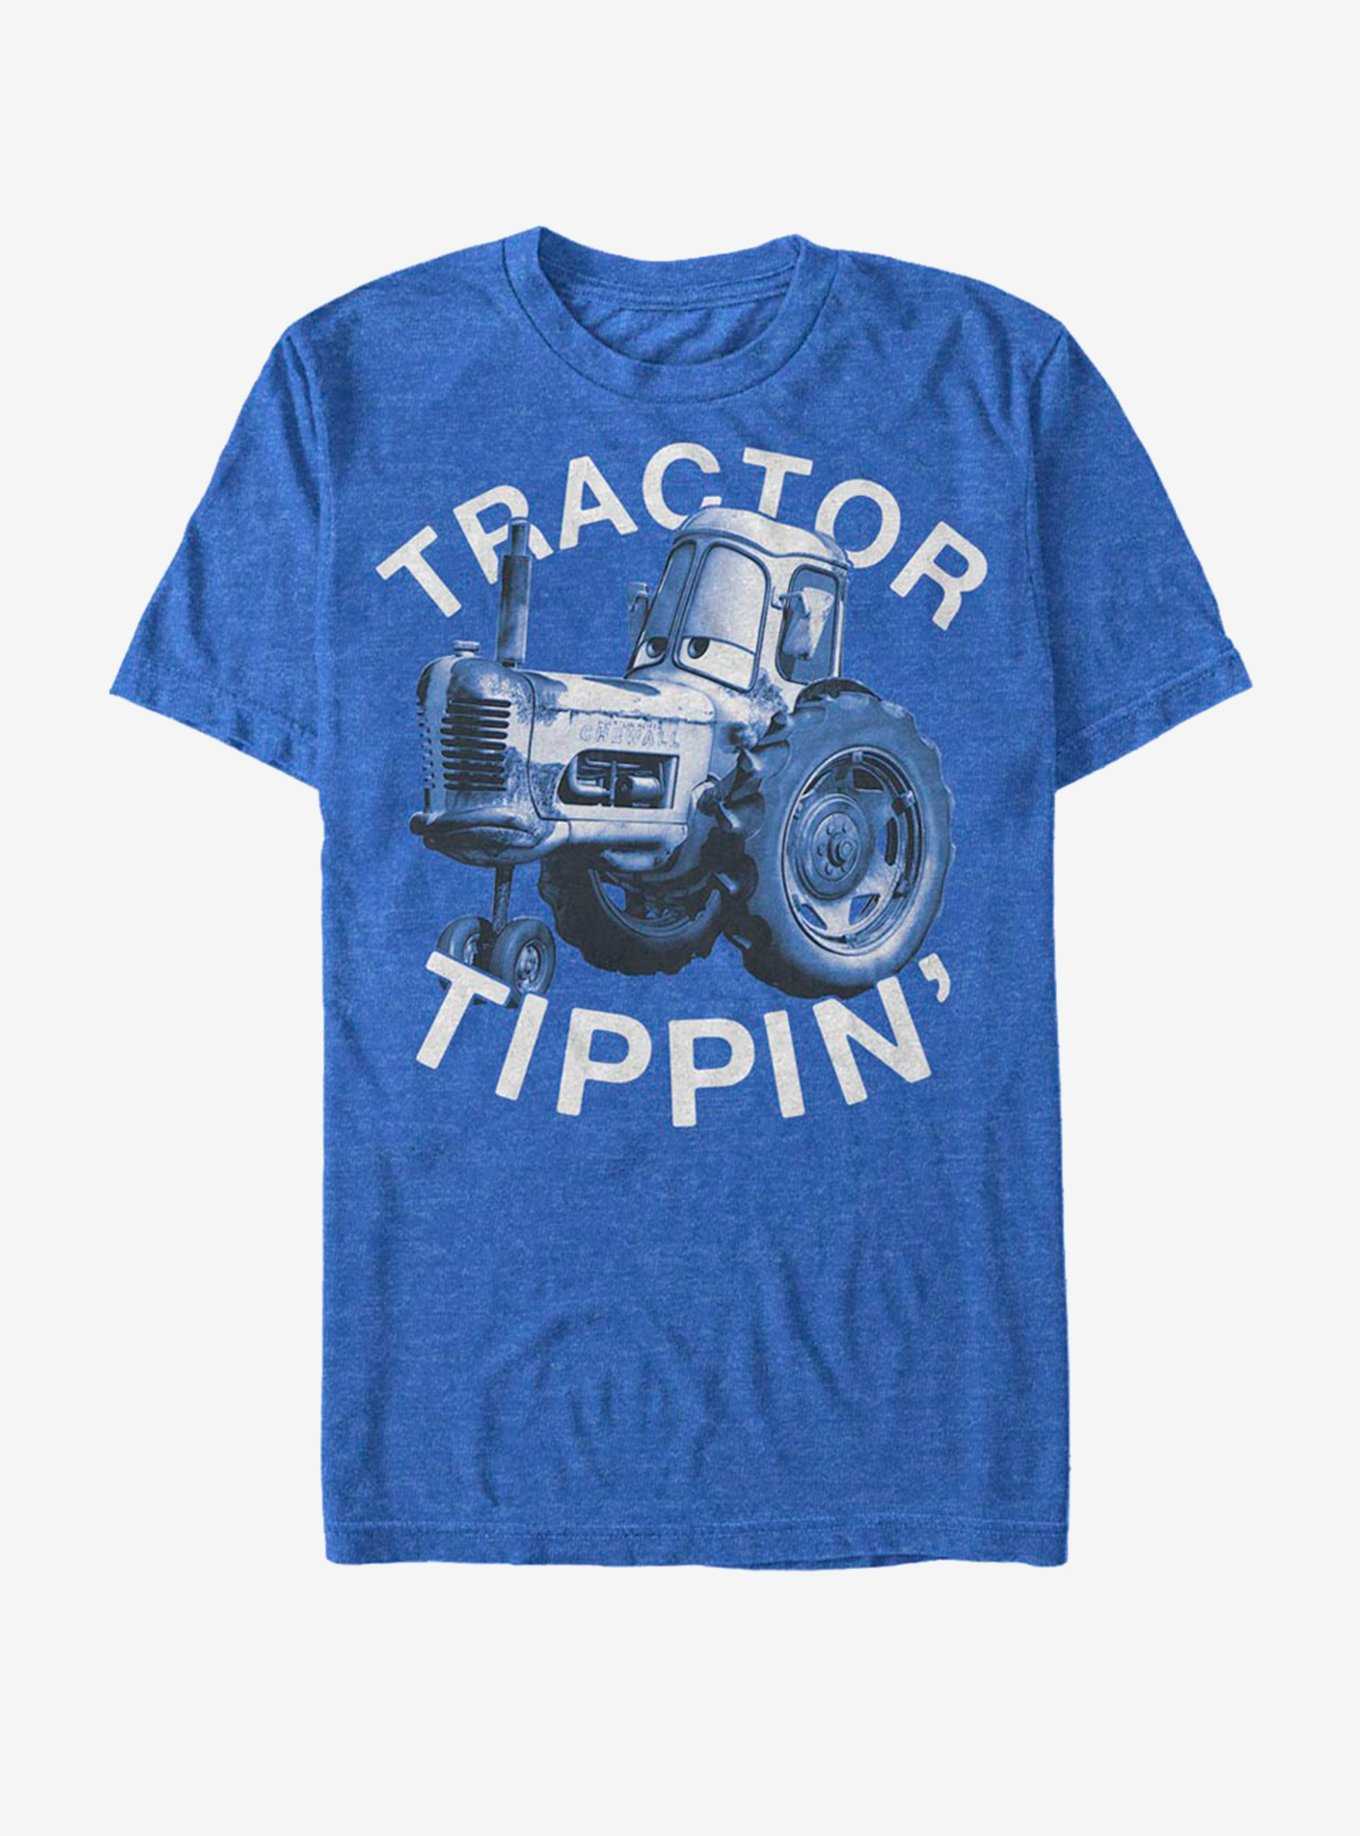 Disney Pixar Cars Tractor Tippin T-Shirt, , hi-res